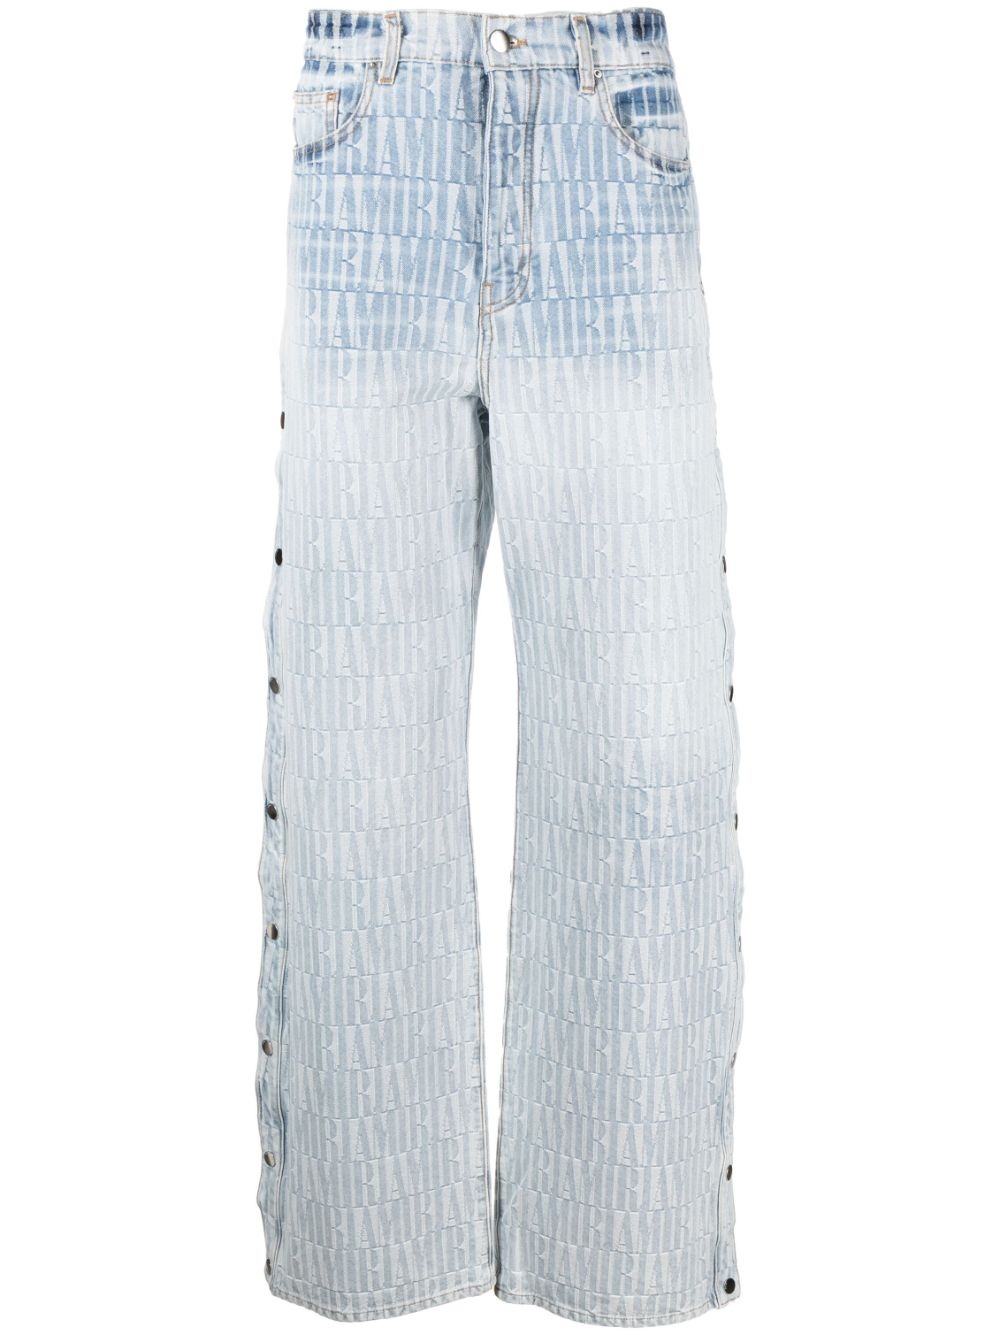 Cotton denim jeans - 1